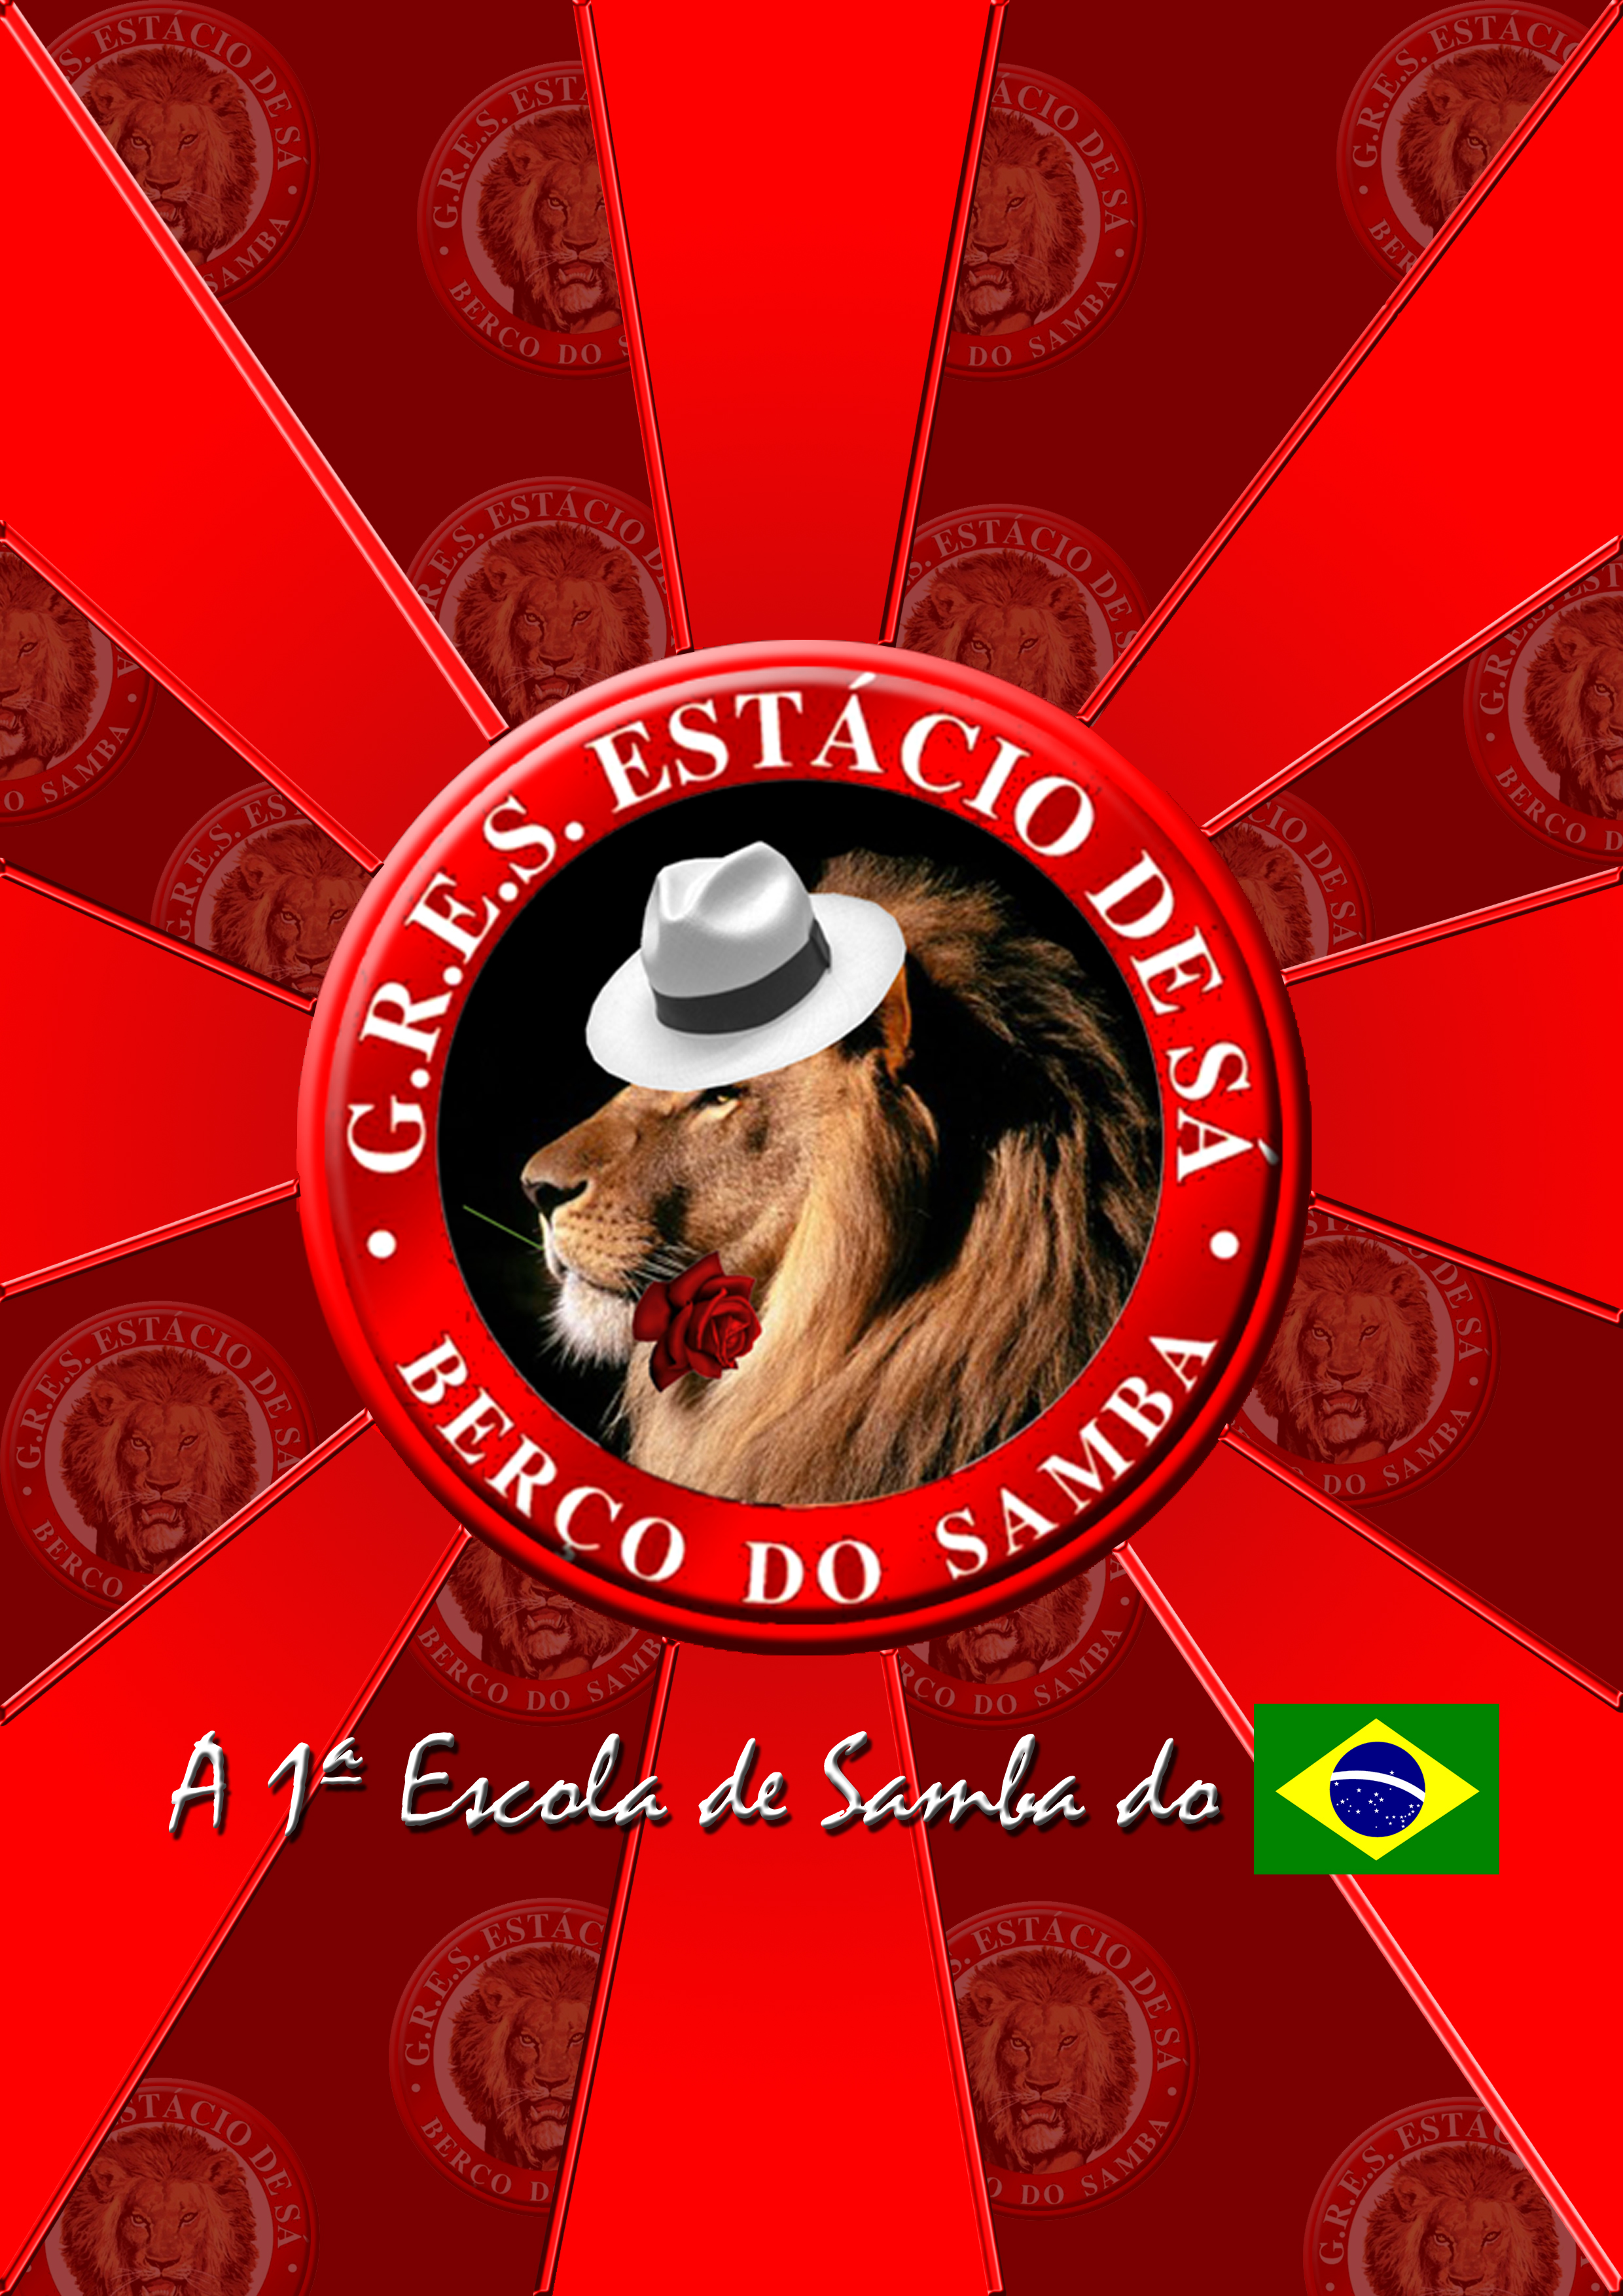 Estácio de Sá a primeira escola de samba do Brasil